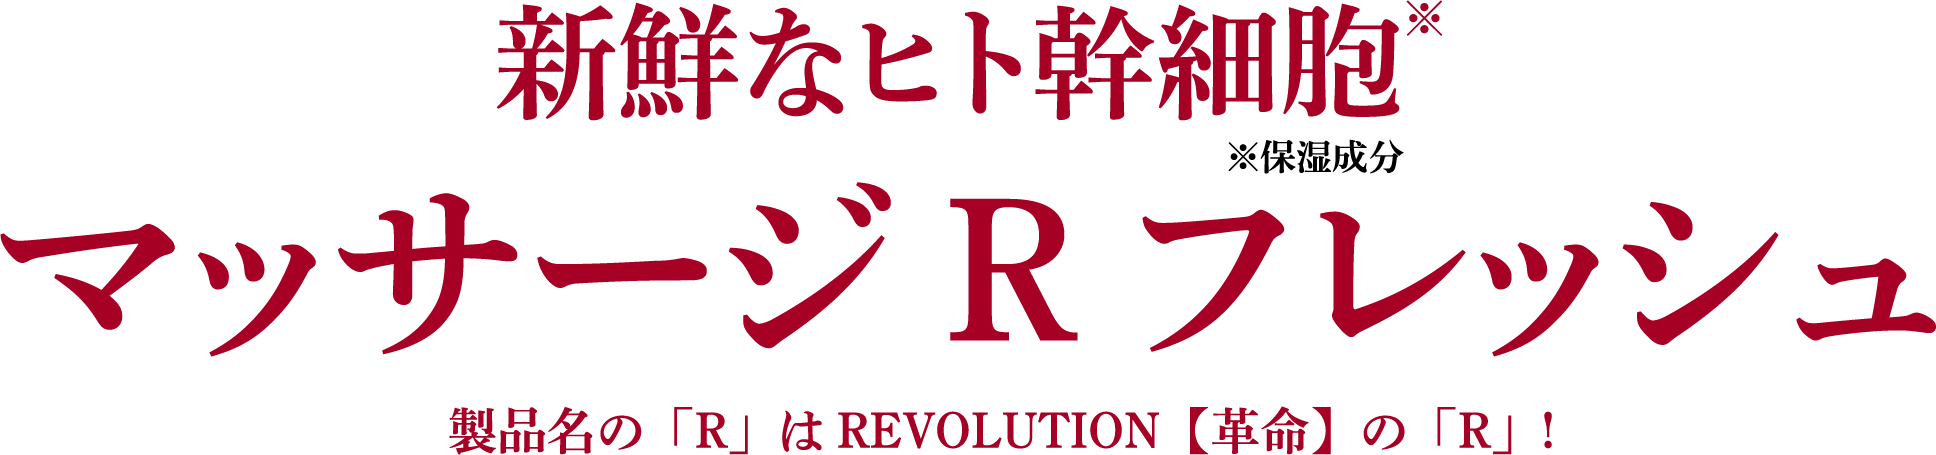 新鮮なヒト幹細胞*(※保湿成分)
マッサージRフレッシュ
製品名の「R」はREVOLUTION【革命】の「R」!